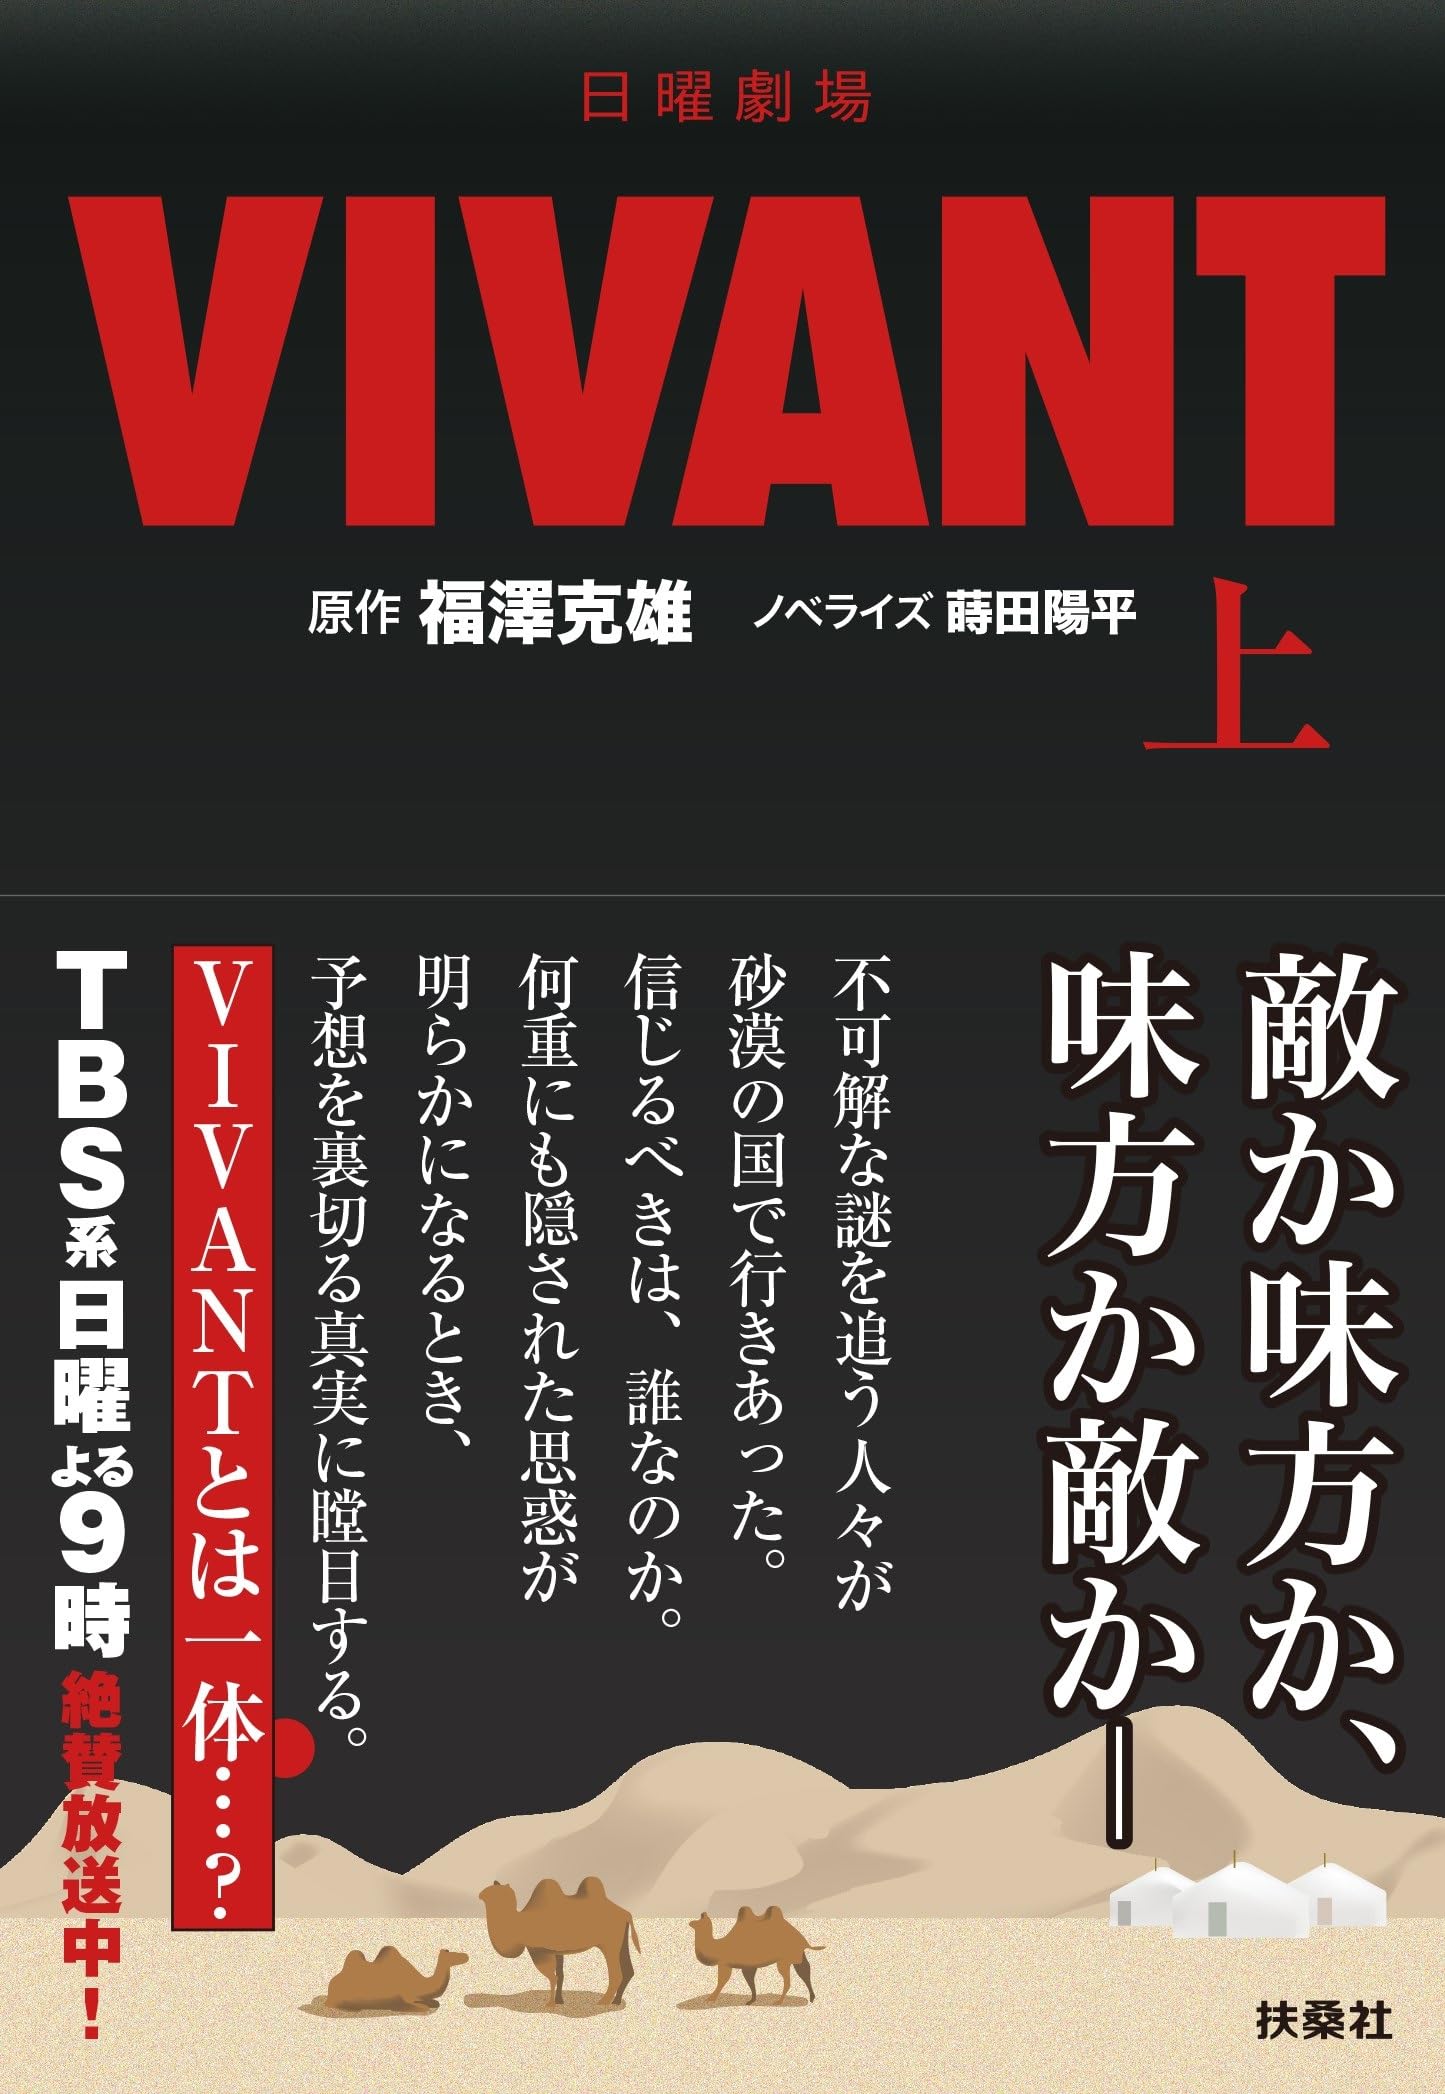 『VIVANT』小説版を読む